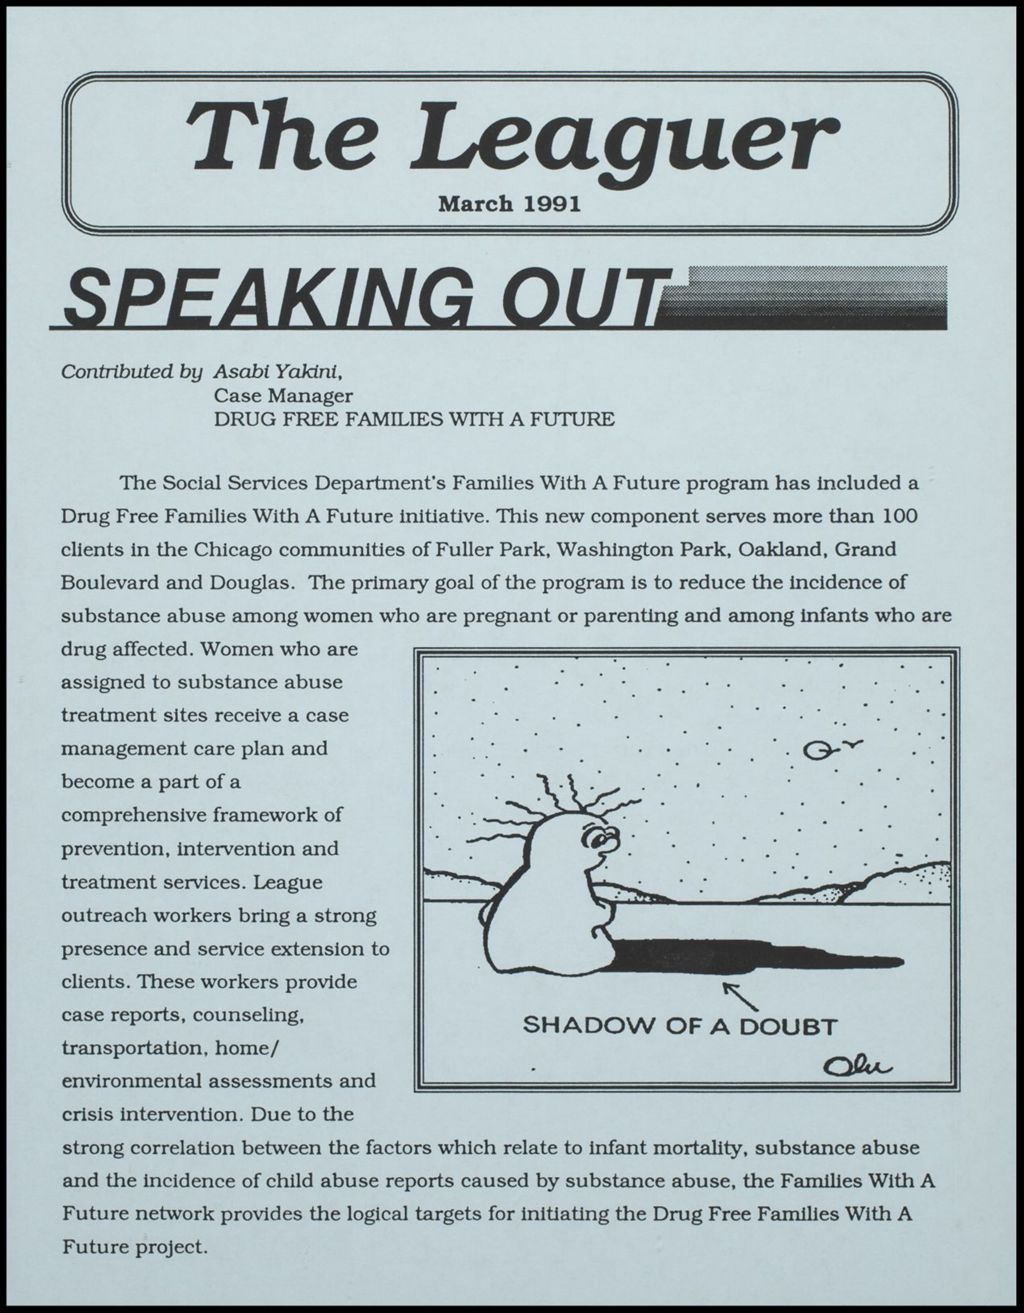 CUL 1987 Annual Report, 1987 (Folder IV-747)